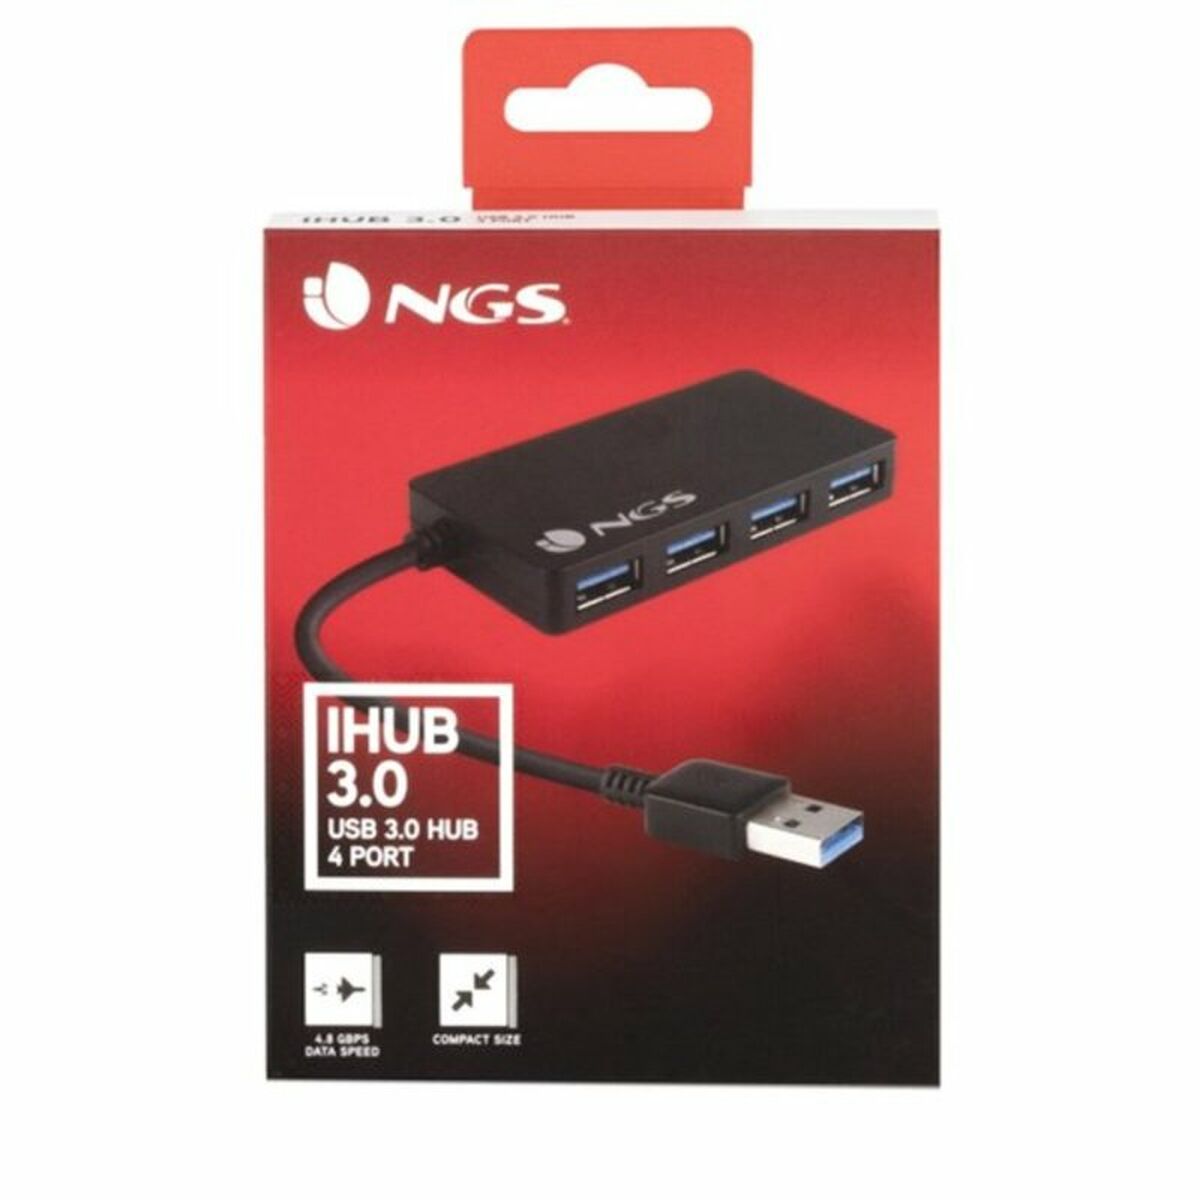 USB Hub NGS IHUB3.0 Sort 480 Mbps (1 enheder)